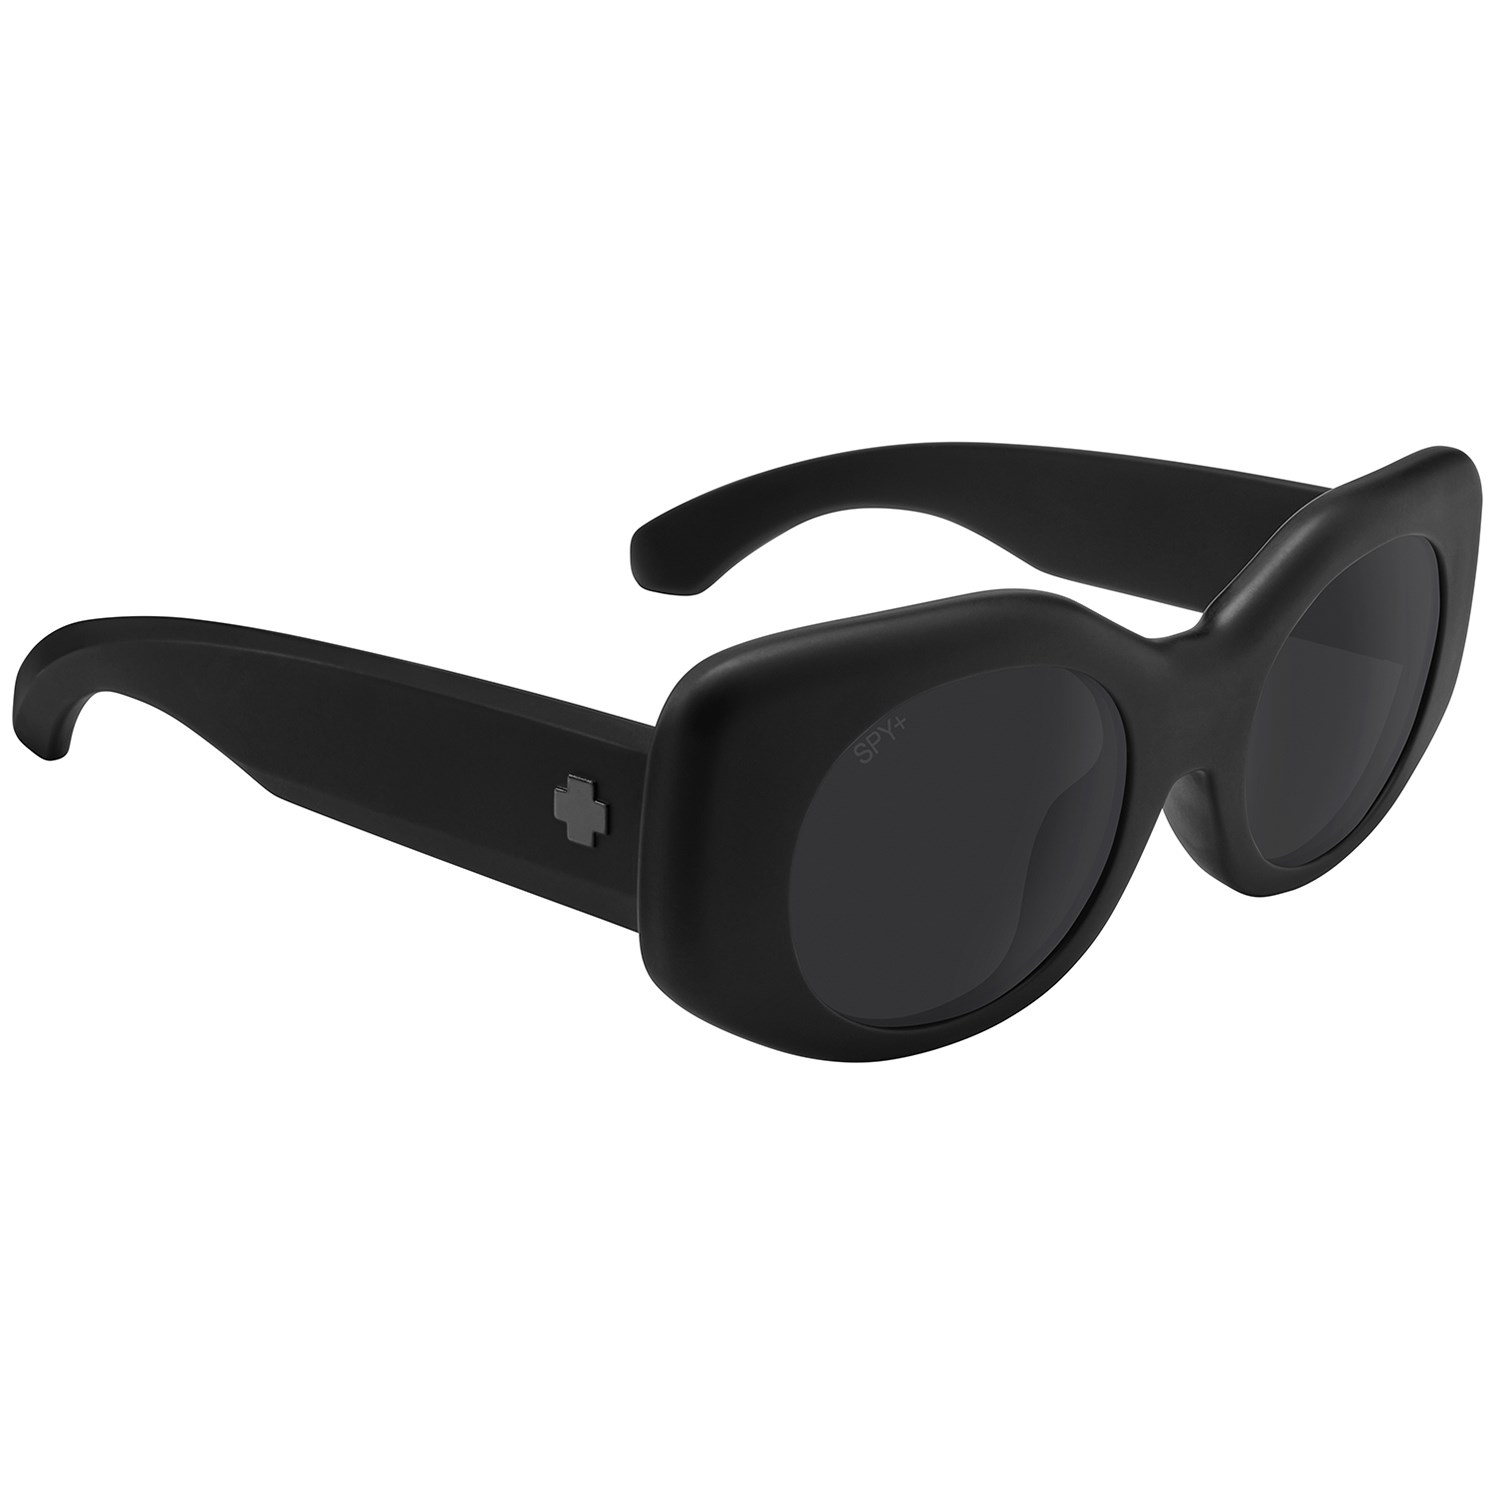 Spy Sunglasses Camera at Rs 3500/piece(s) | Camera Sunglass in New Delhi |  ID: 11256003948